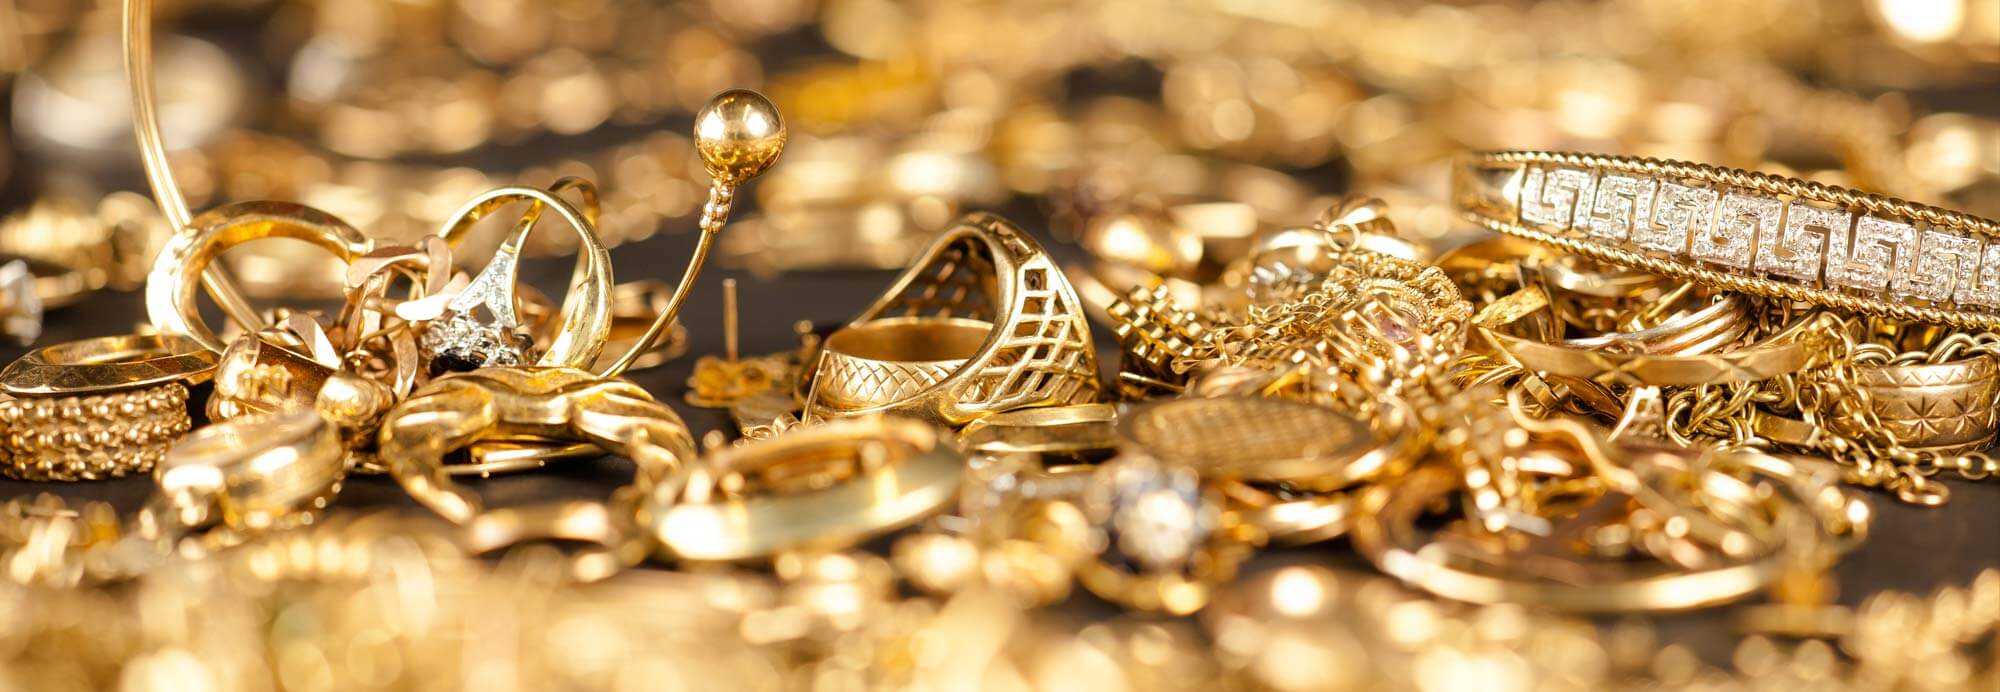 طلای تقلبی و کمبود سکه، چالش جدید بازار طلا